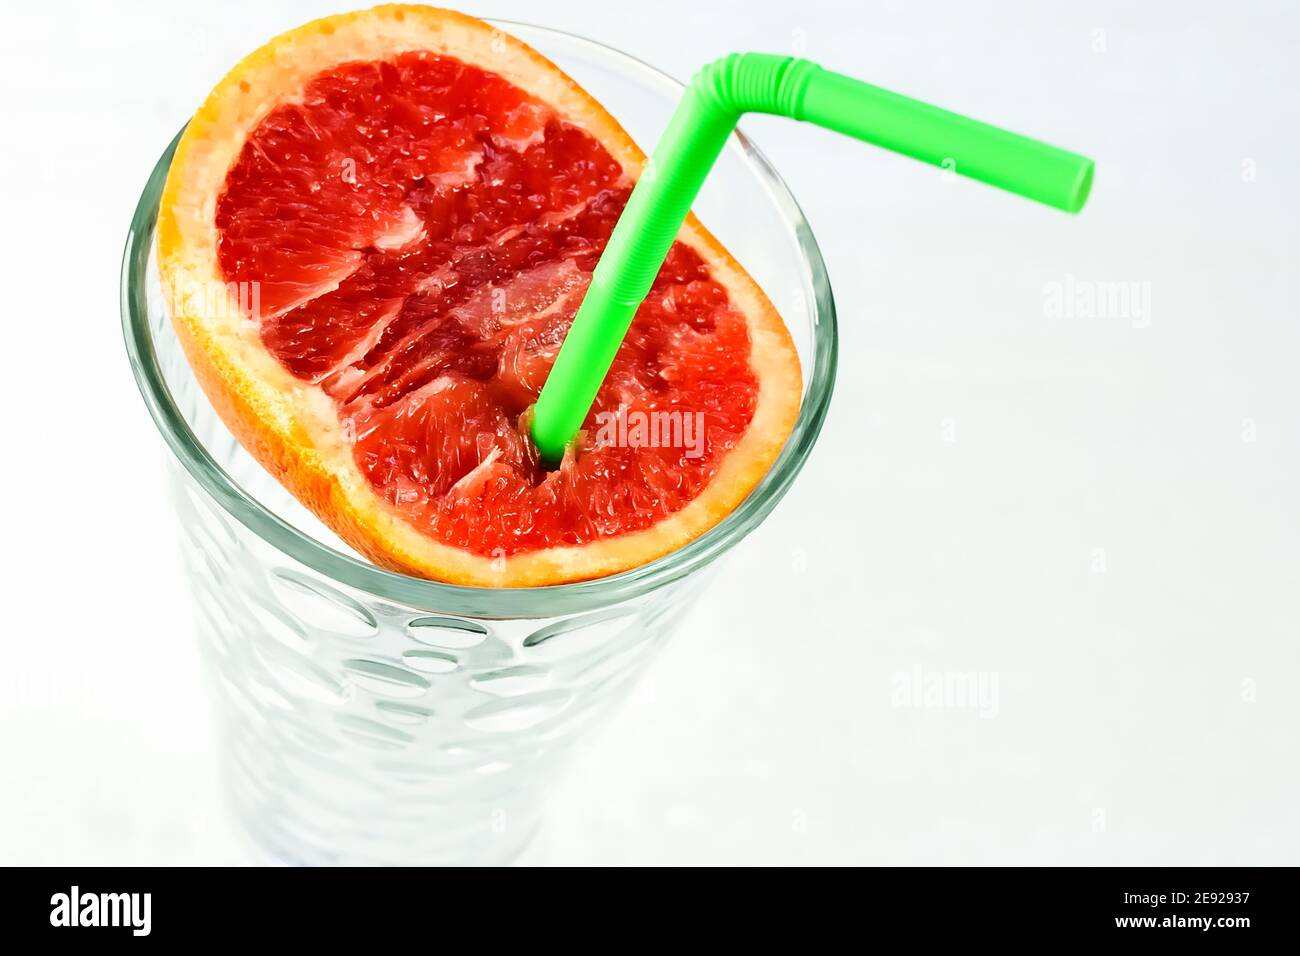 Eine halbe saftige Grapefruit mit einem grünen Trinkhalm im Glas. Ein gesundes und schmackhaftes Zitrusgetränk, das höchste Vitamine enthält. Stockfoto